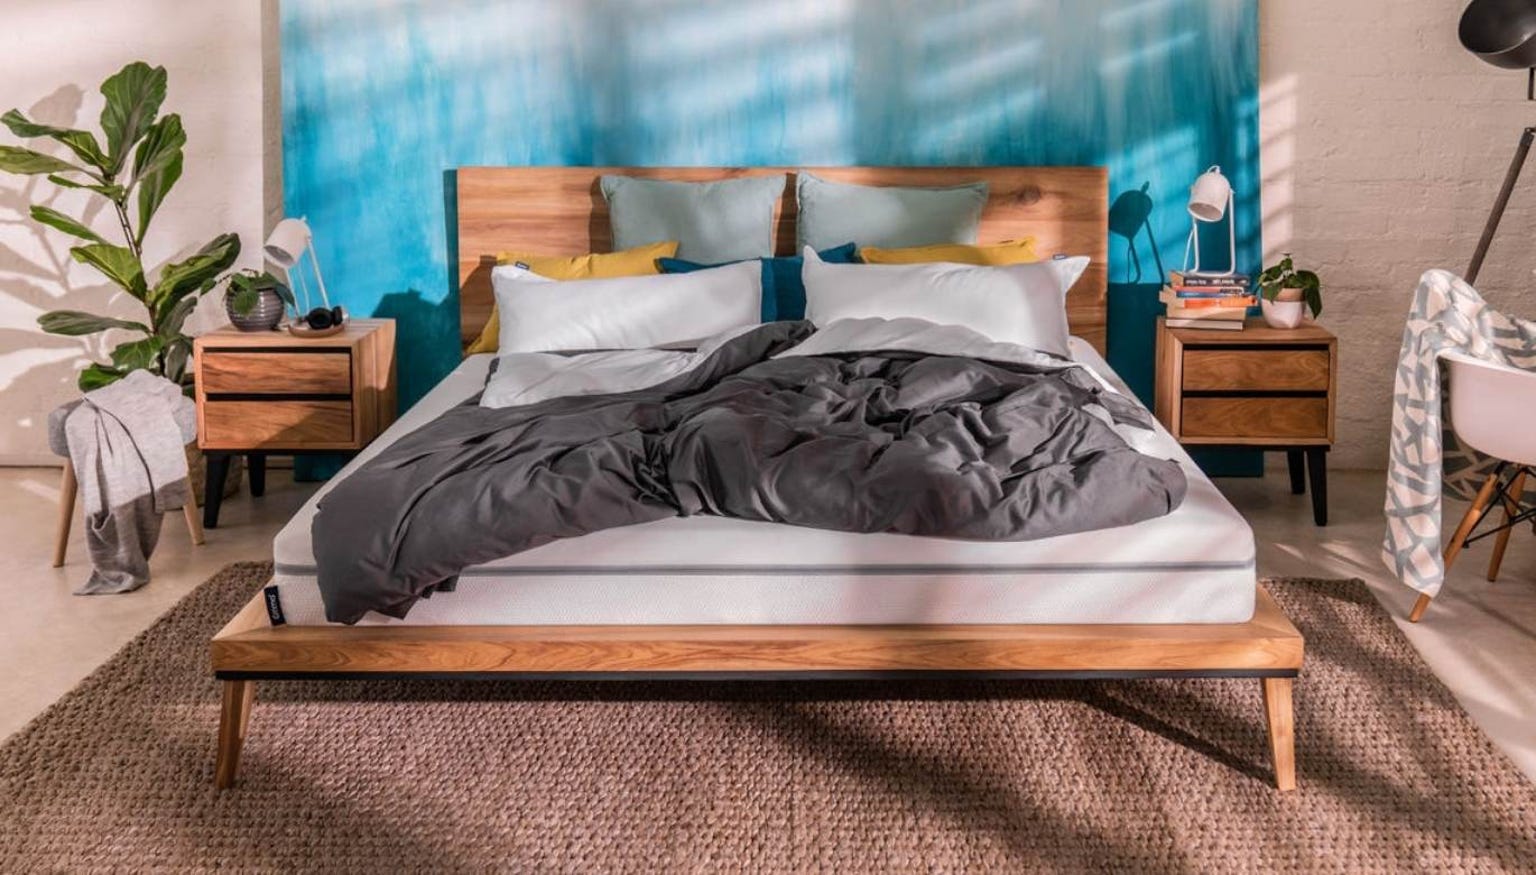 Colchón viscoelástico Emma Essential en dormitorio sobre cama de madera